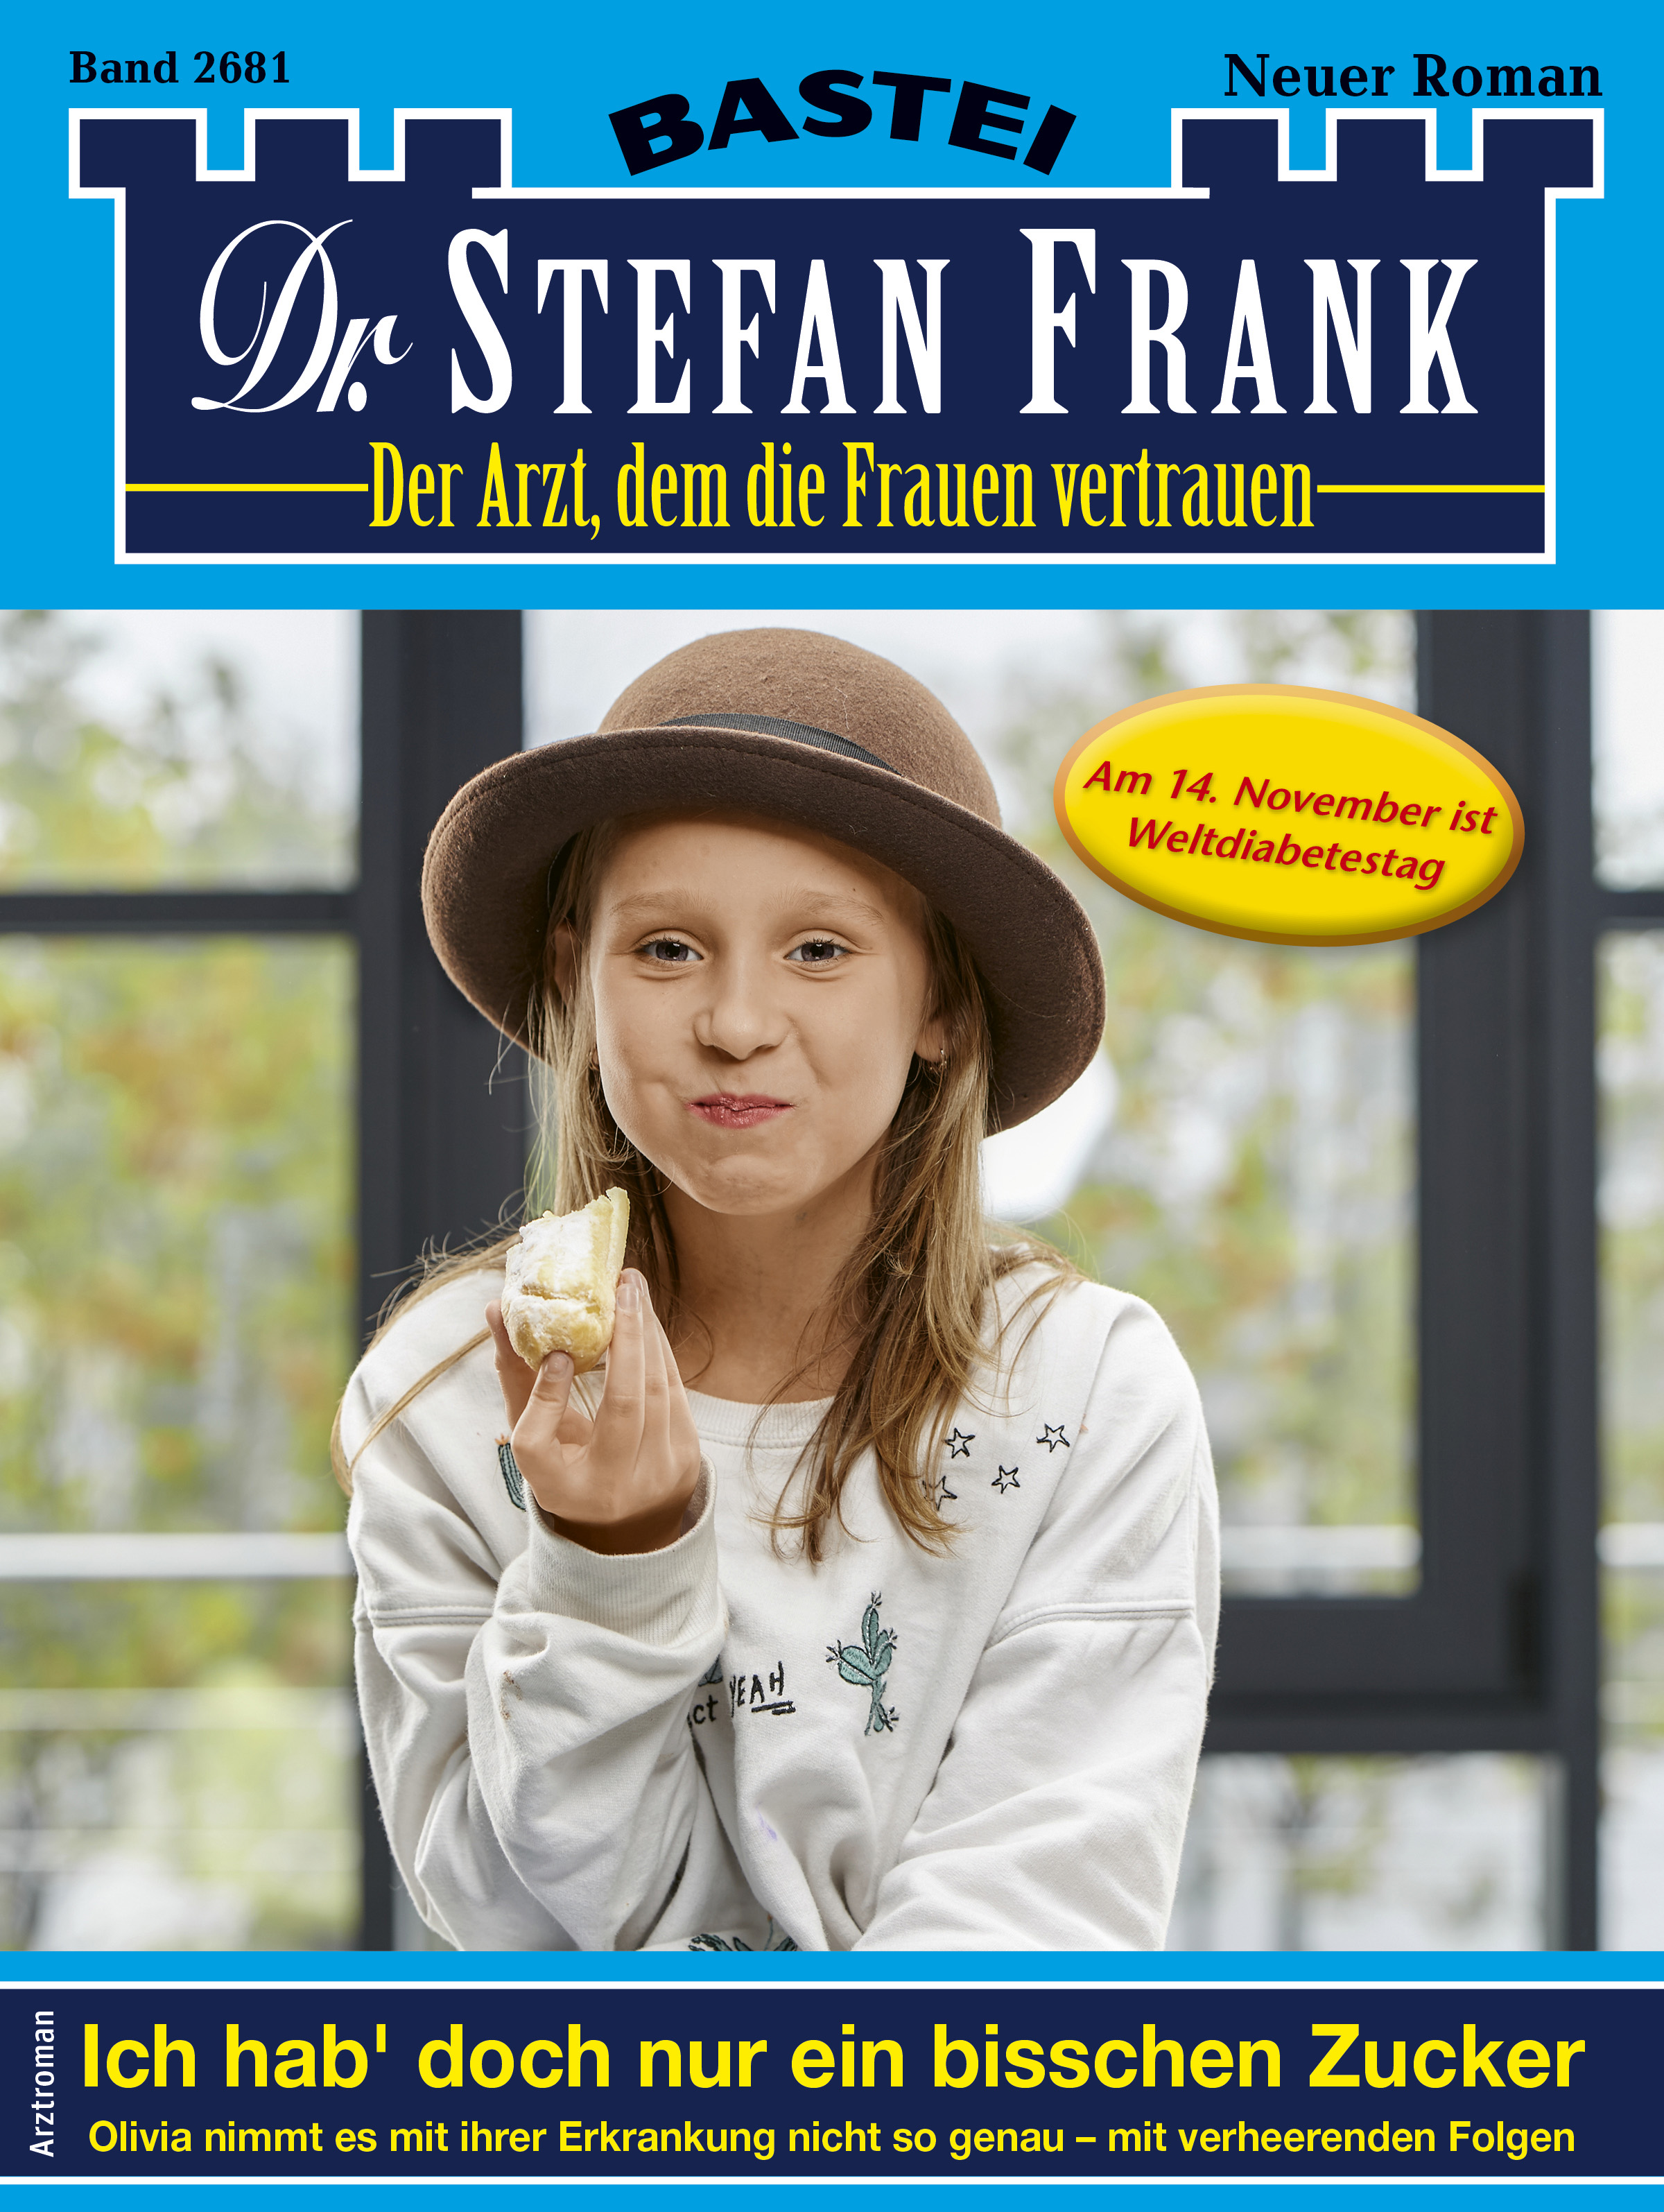 Dr. Stefan Frank 2681